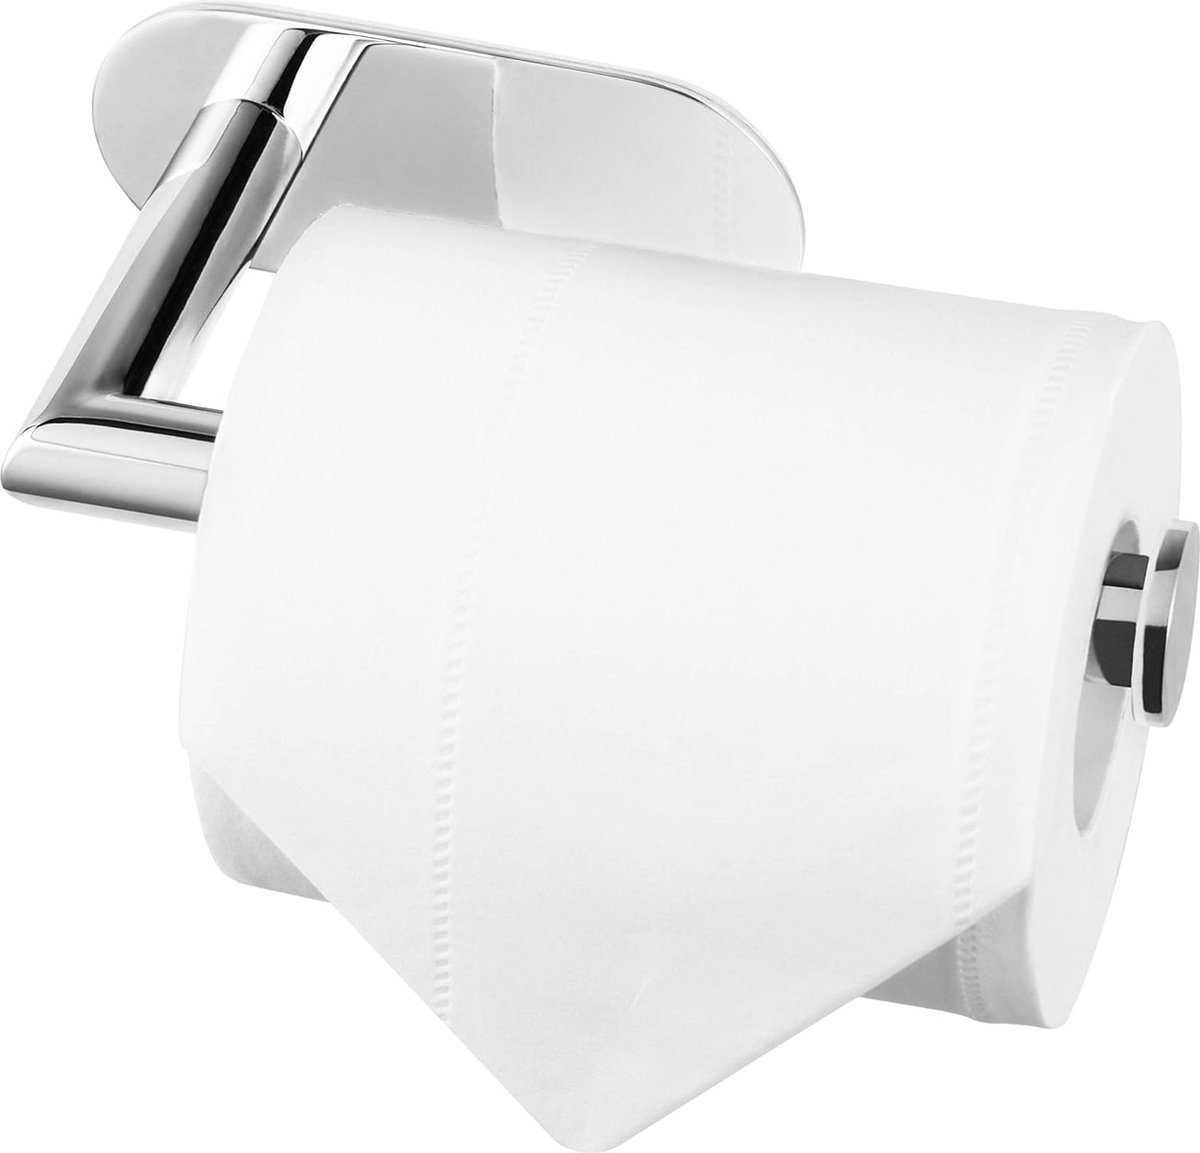 Toiletrolhouder RVS zilver glimmend - Zonder boren - Voor wc of badkamer - Roestvrij staal